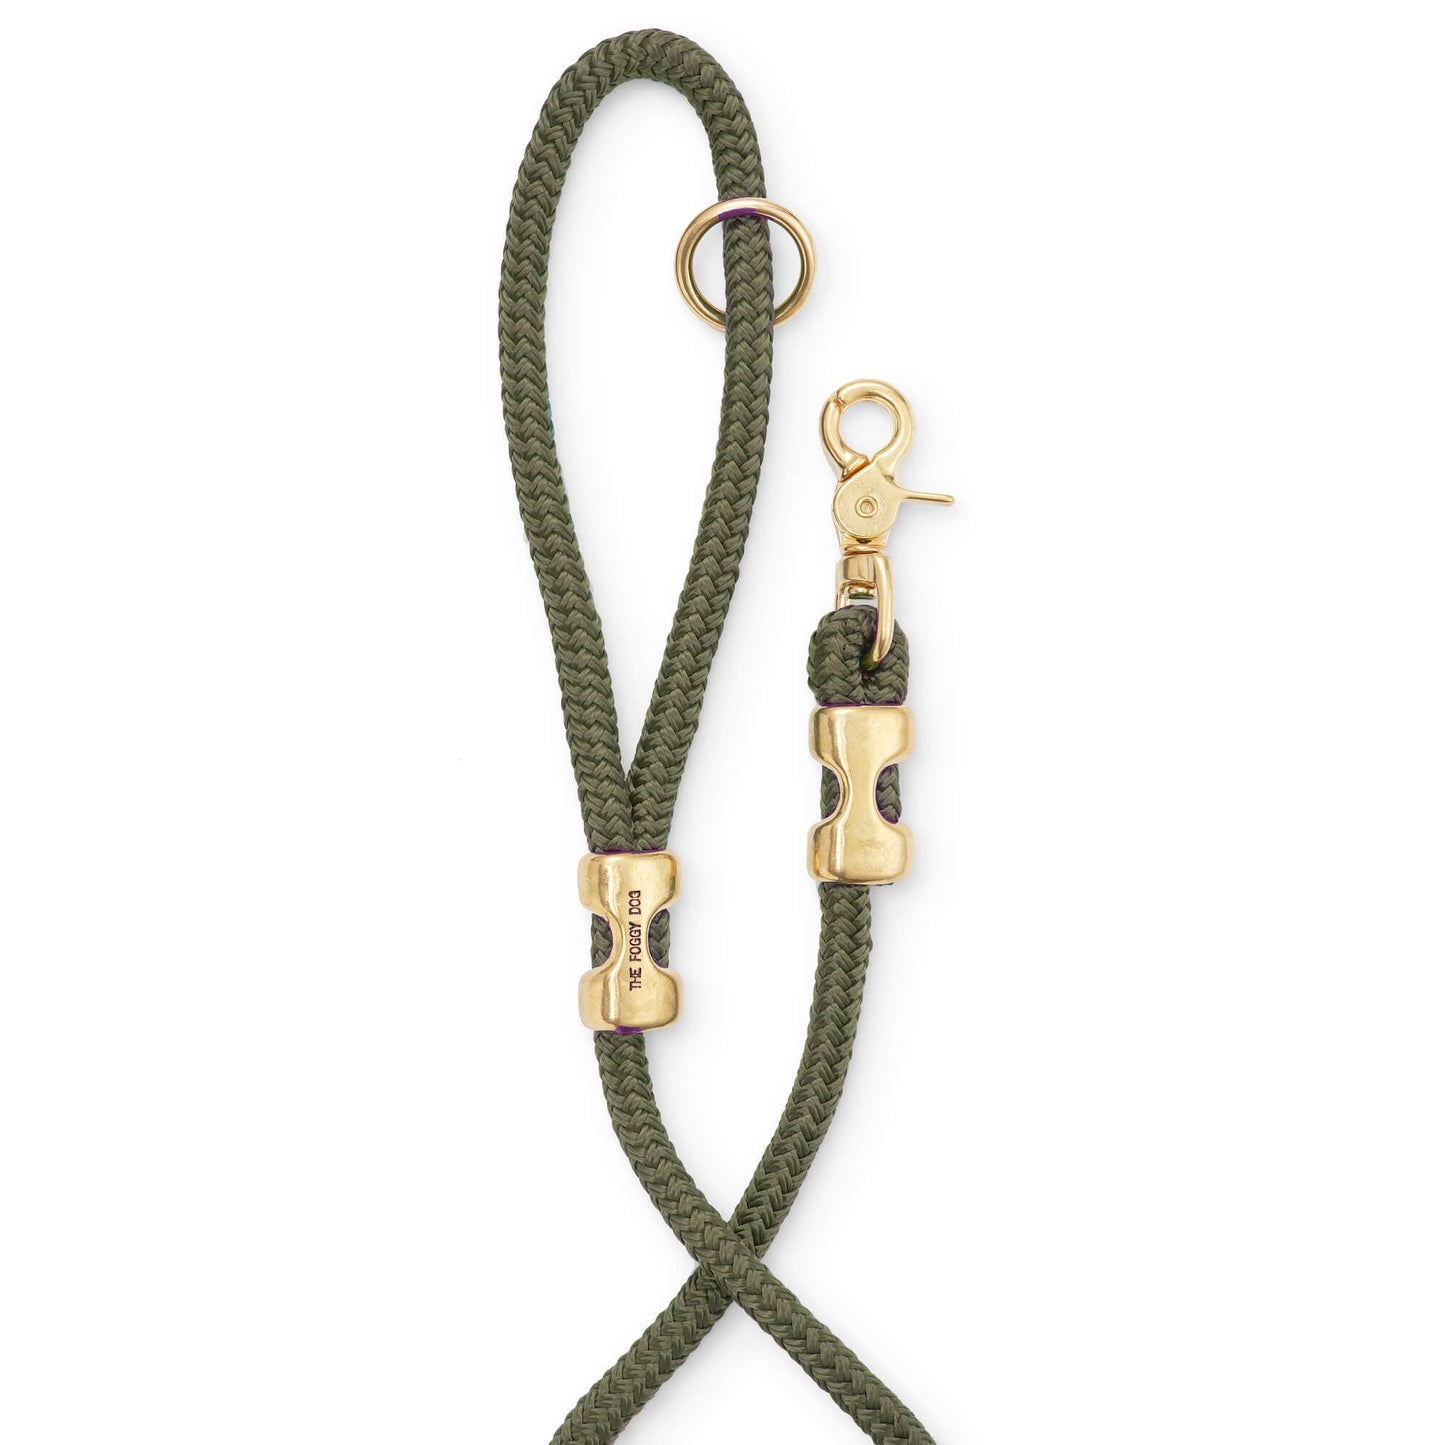 Olive Marine Rope Dog Lead - The Foggy Dog